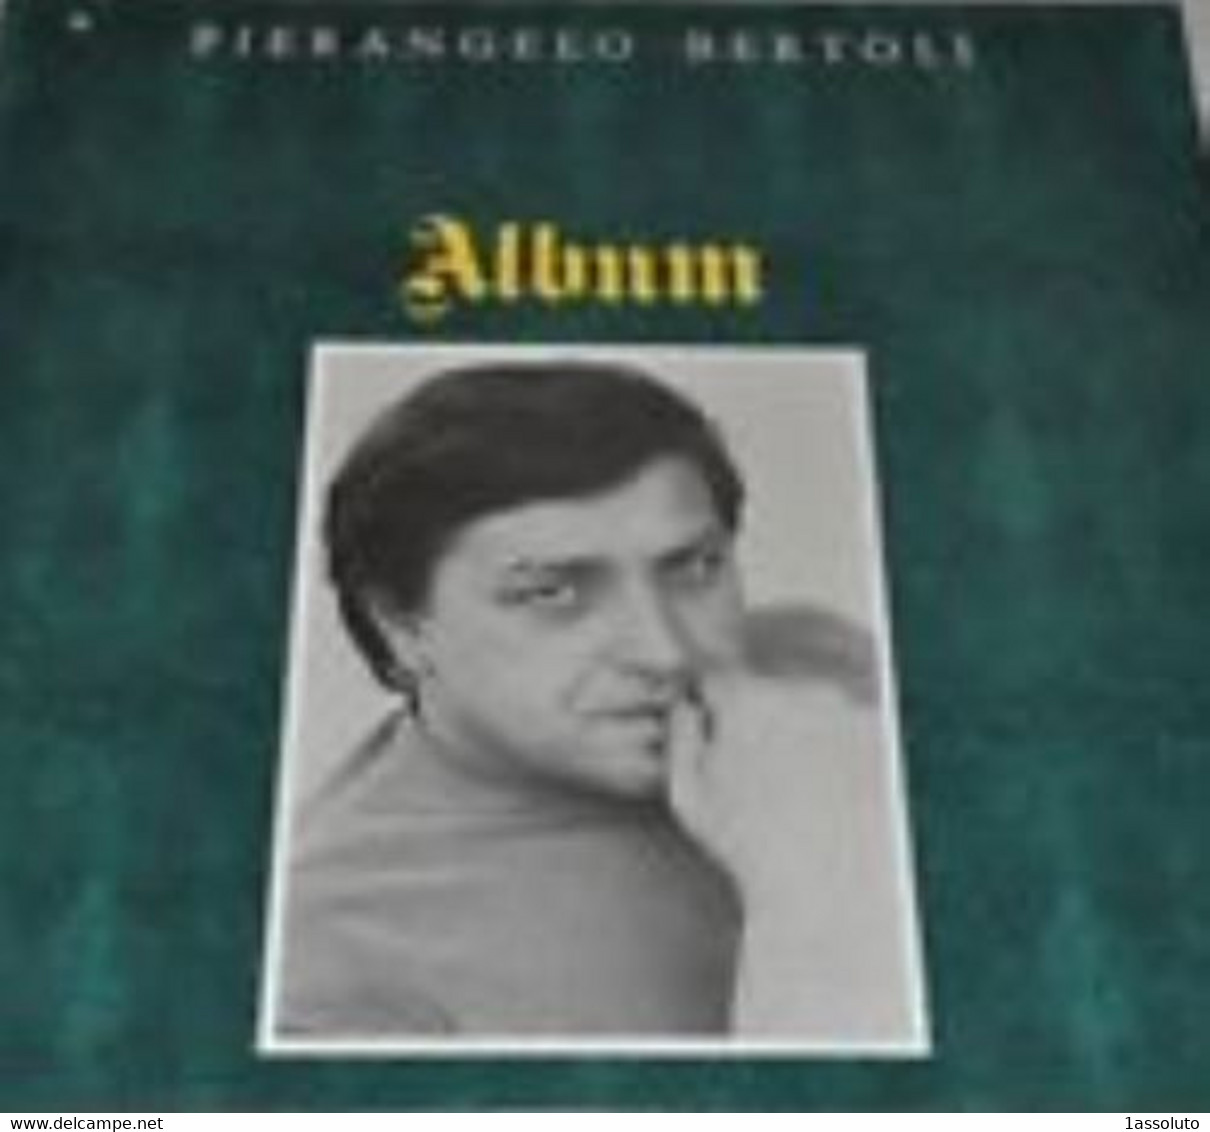 PIERANGELO BERTOLI - Album - - Altri - Musica Italiana